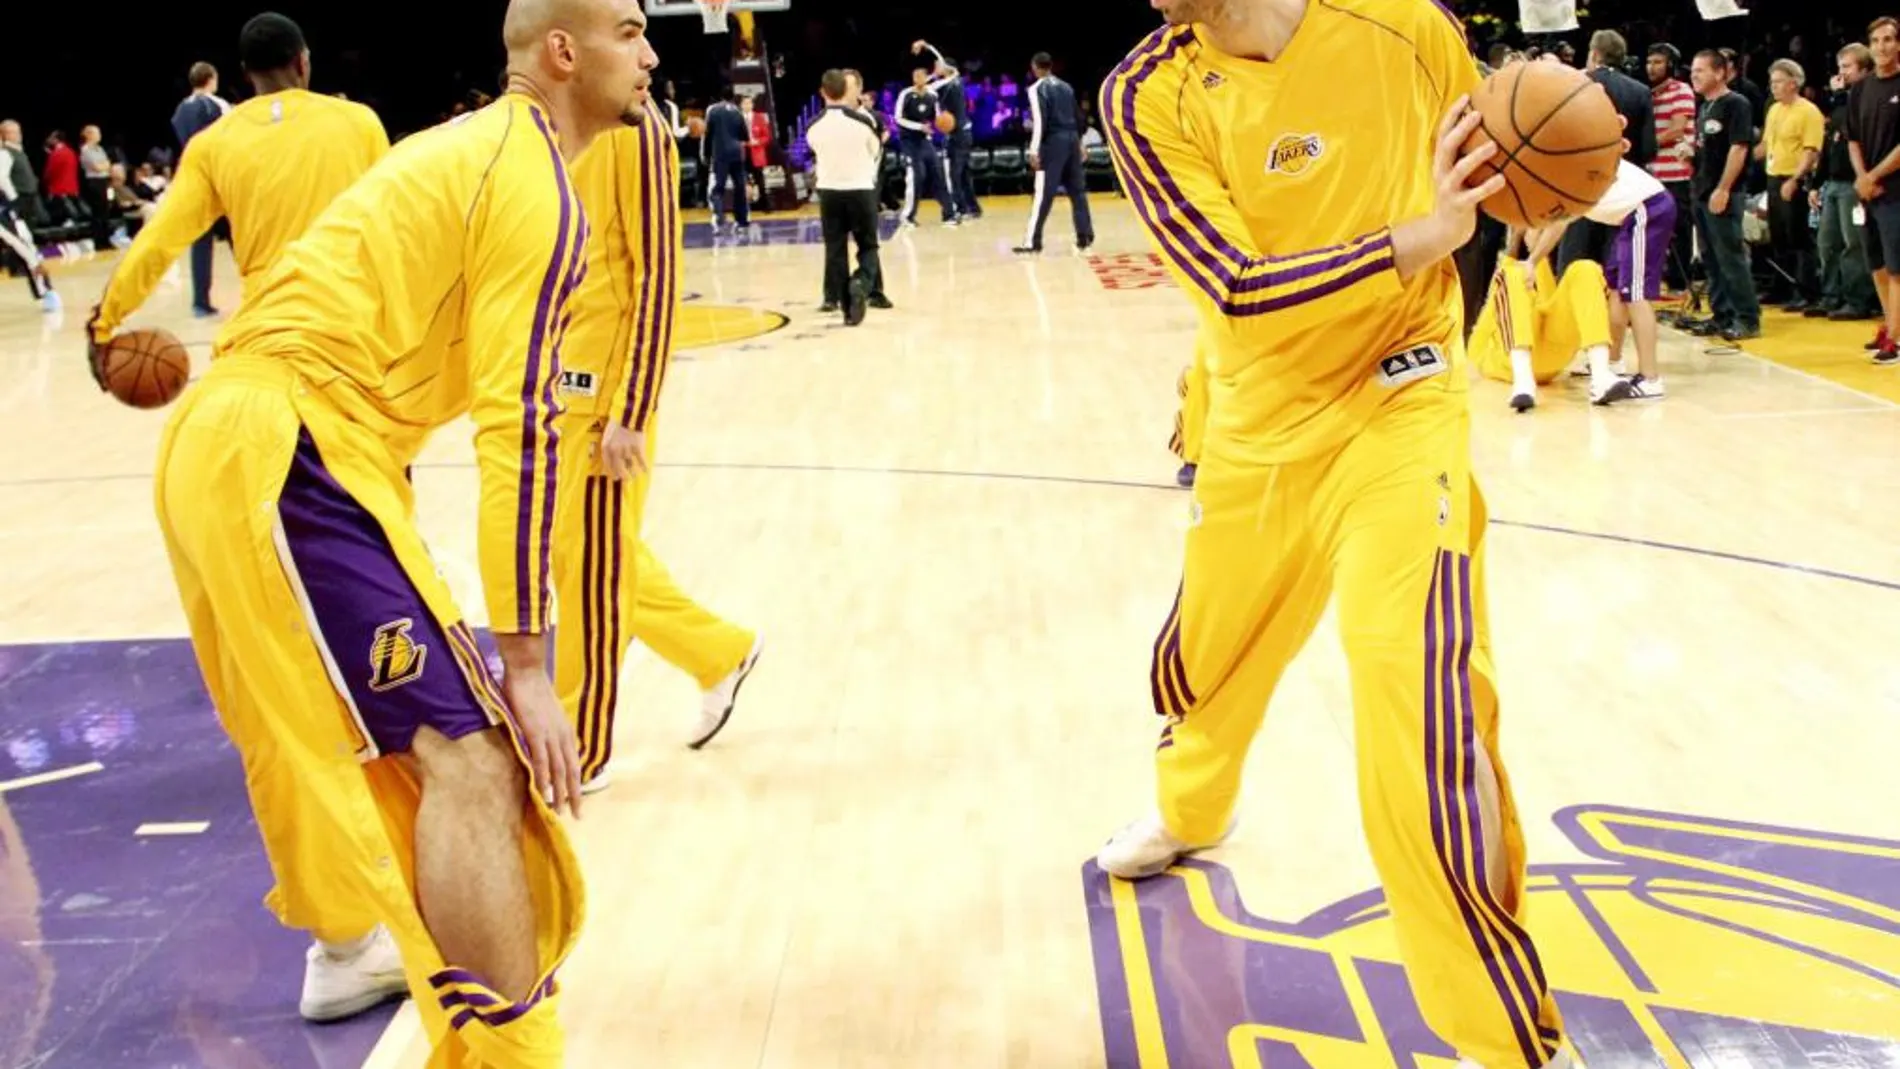 El ala-pivot español Pau Gasol, de Los Ángeles Lakers, momentos antes del comienzo del partido de pretemporada que su equipo disputó ayer contra los Nuggets de Denver en el Staples Center de Los Angeles, en el que los Nuggets ganaron por 97-88